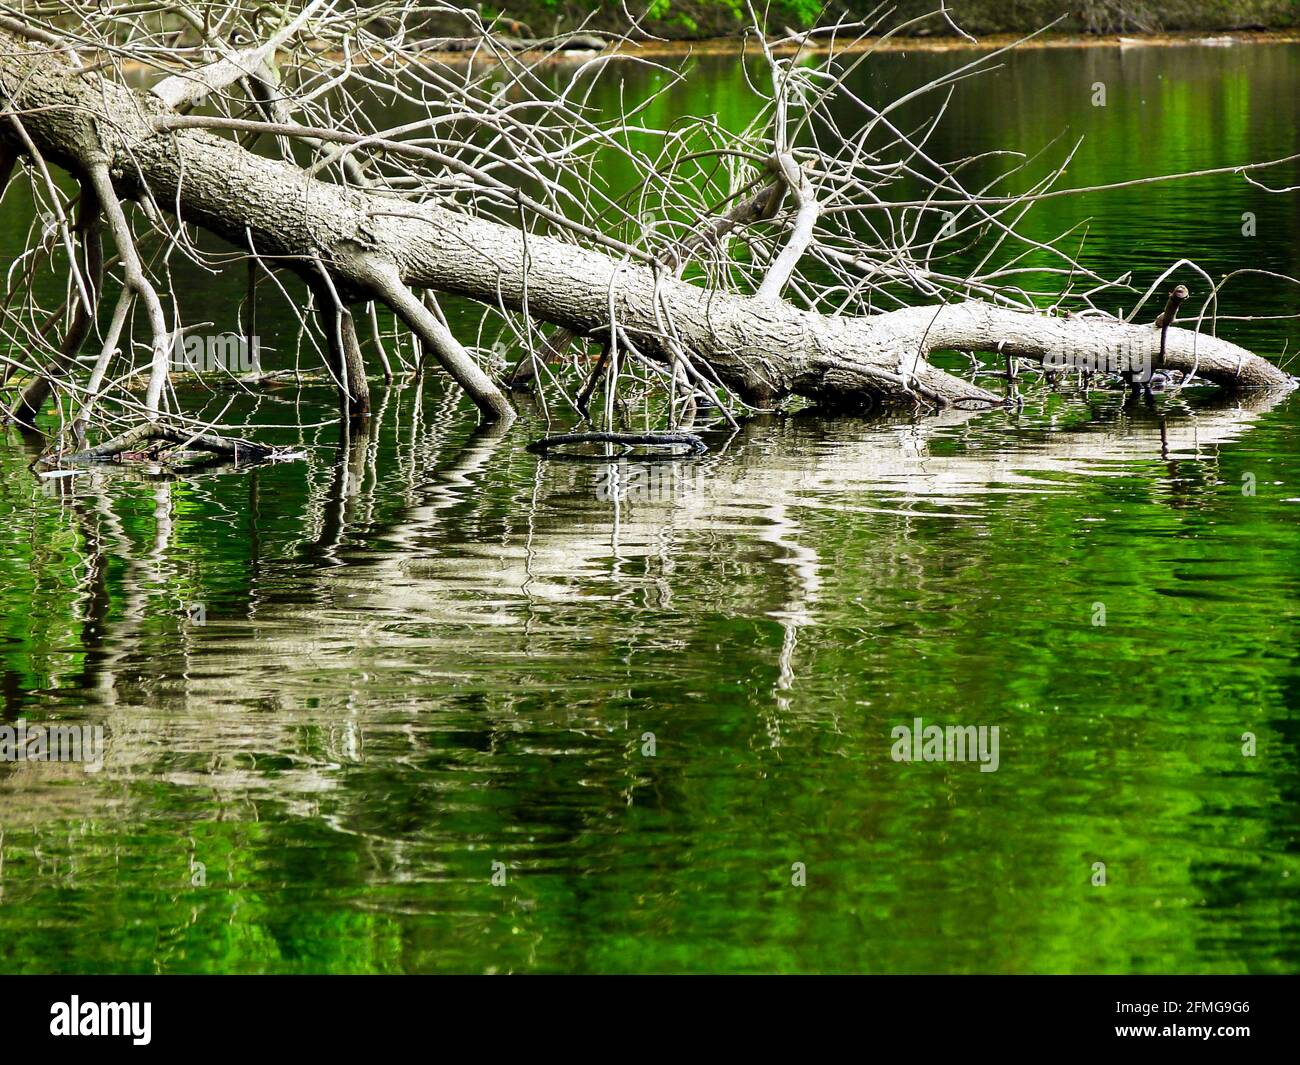 Gefallener Weidenbaum-Stamm im grünen Seenwasser mit Reflexion. Natur- und Outdoor-Konzept. Ruhige natürliche Frühlingsszene. Leuchtend grüne Farben. Stockfoto